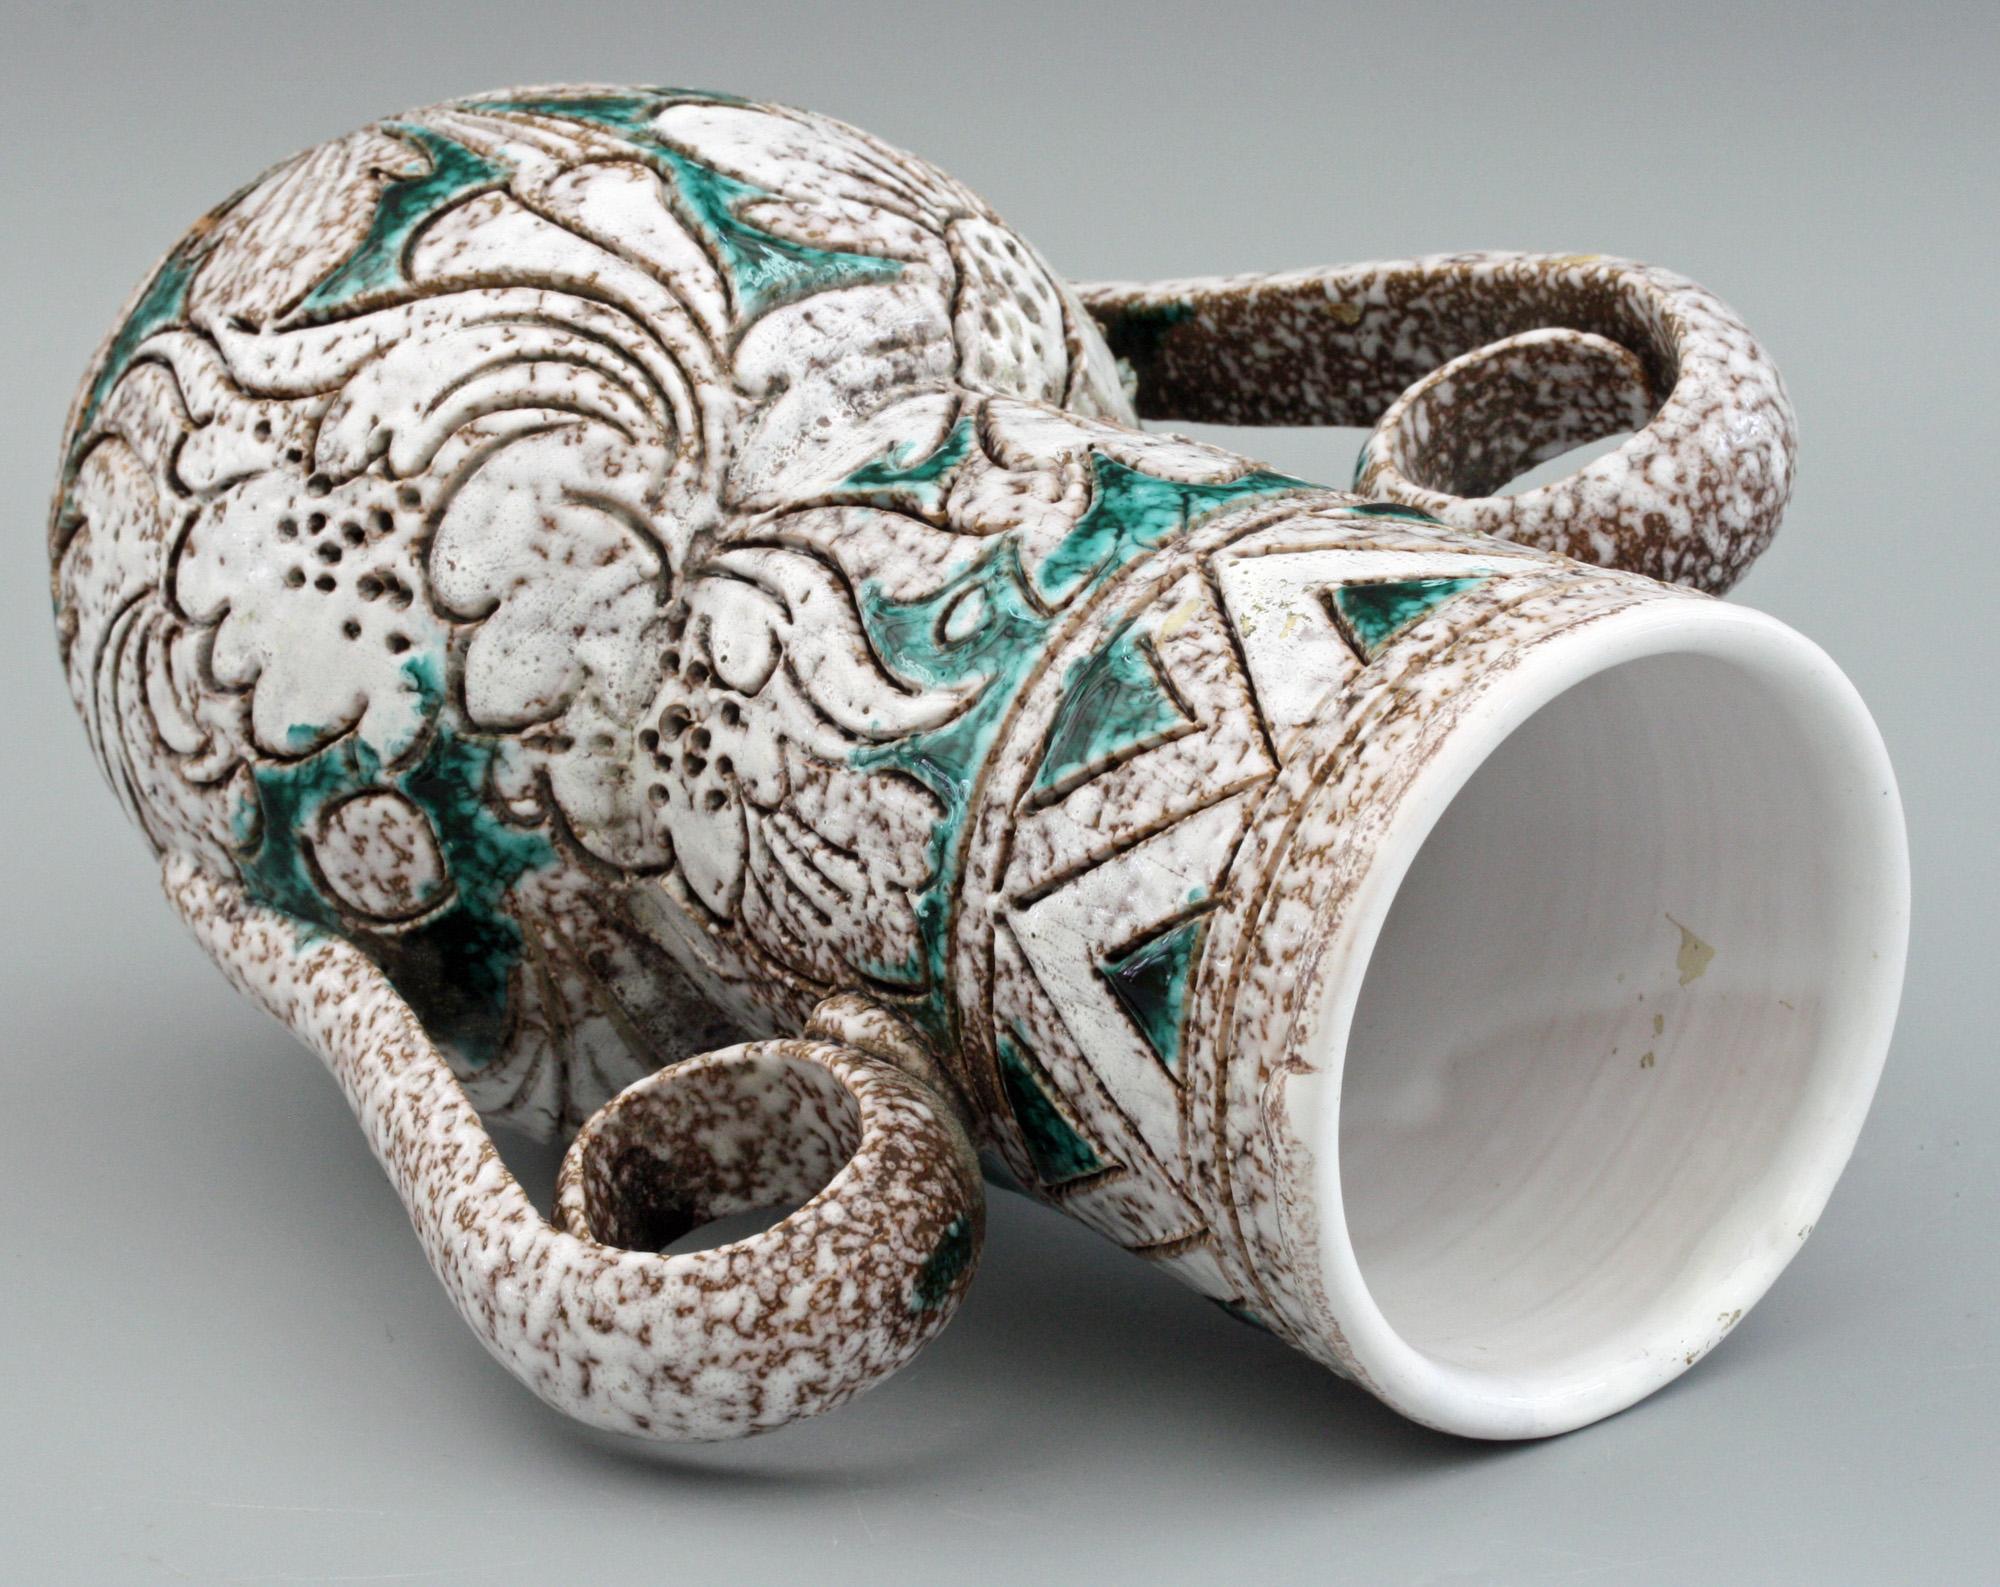 Un élégant vase à deux anses en poterie d'art italienne du milieu du siècle avec des motifs floraux sgraffites dans le style de Fratelli Fanciullacci. Le vase a un corps arrondi avec un haut col en forme d'entonnoir et des poignées en relief en